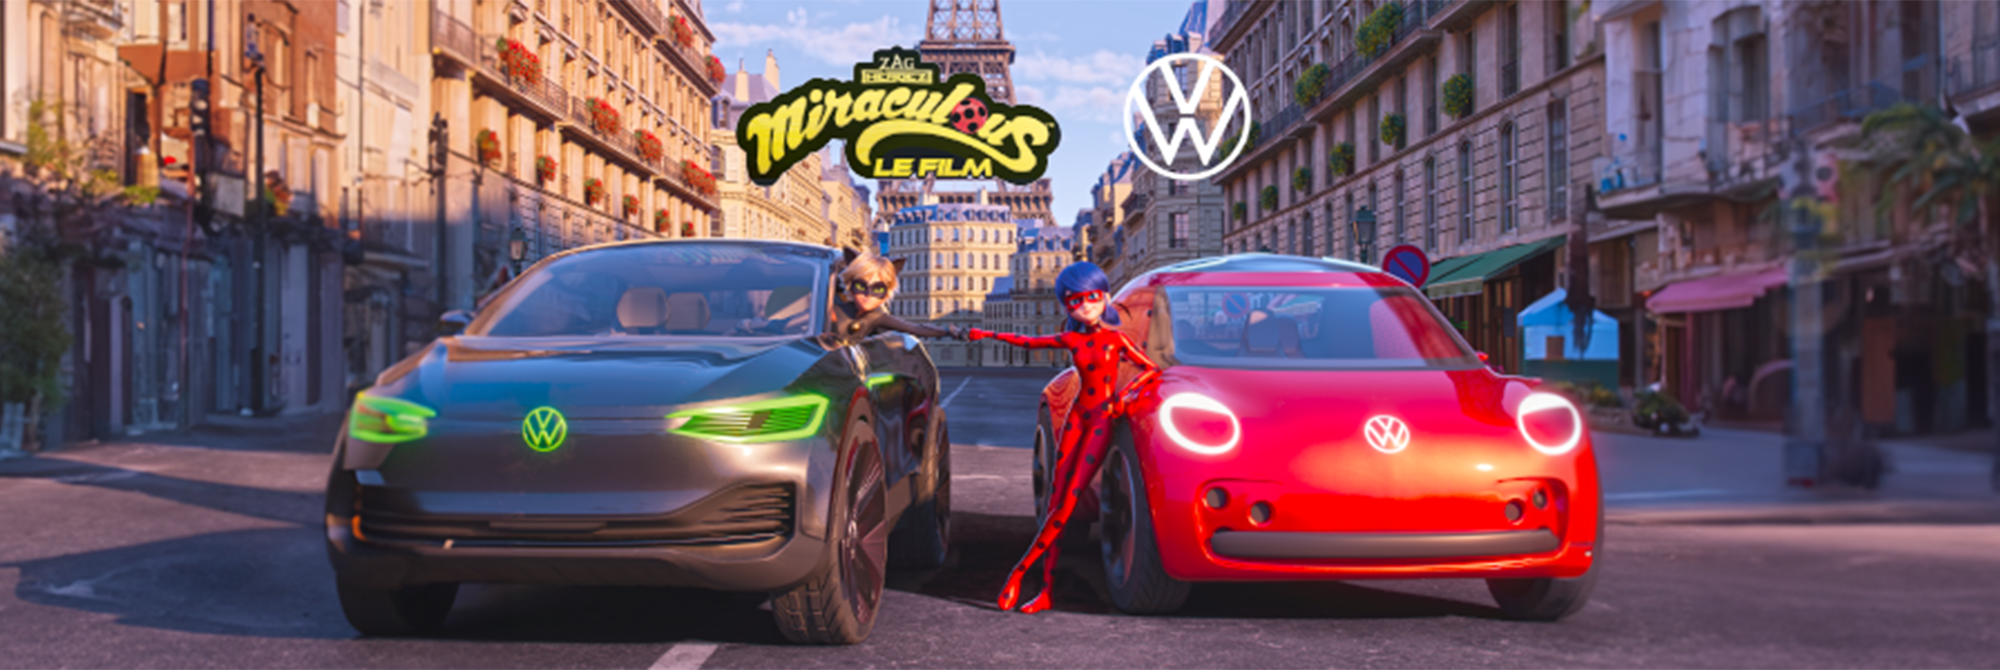 Volkswagen Paris 20 - La Magie Miraculous s'invite chez Volkswagen